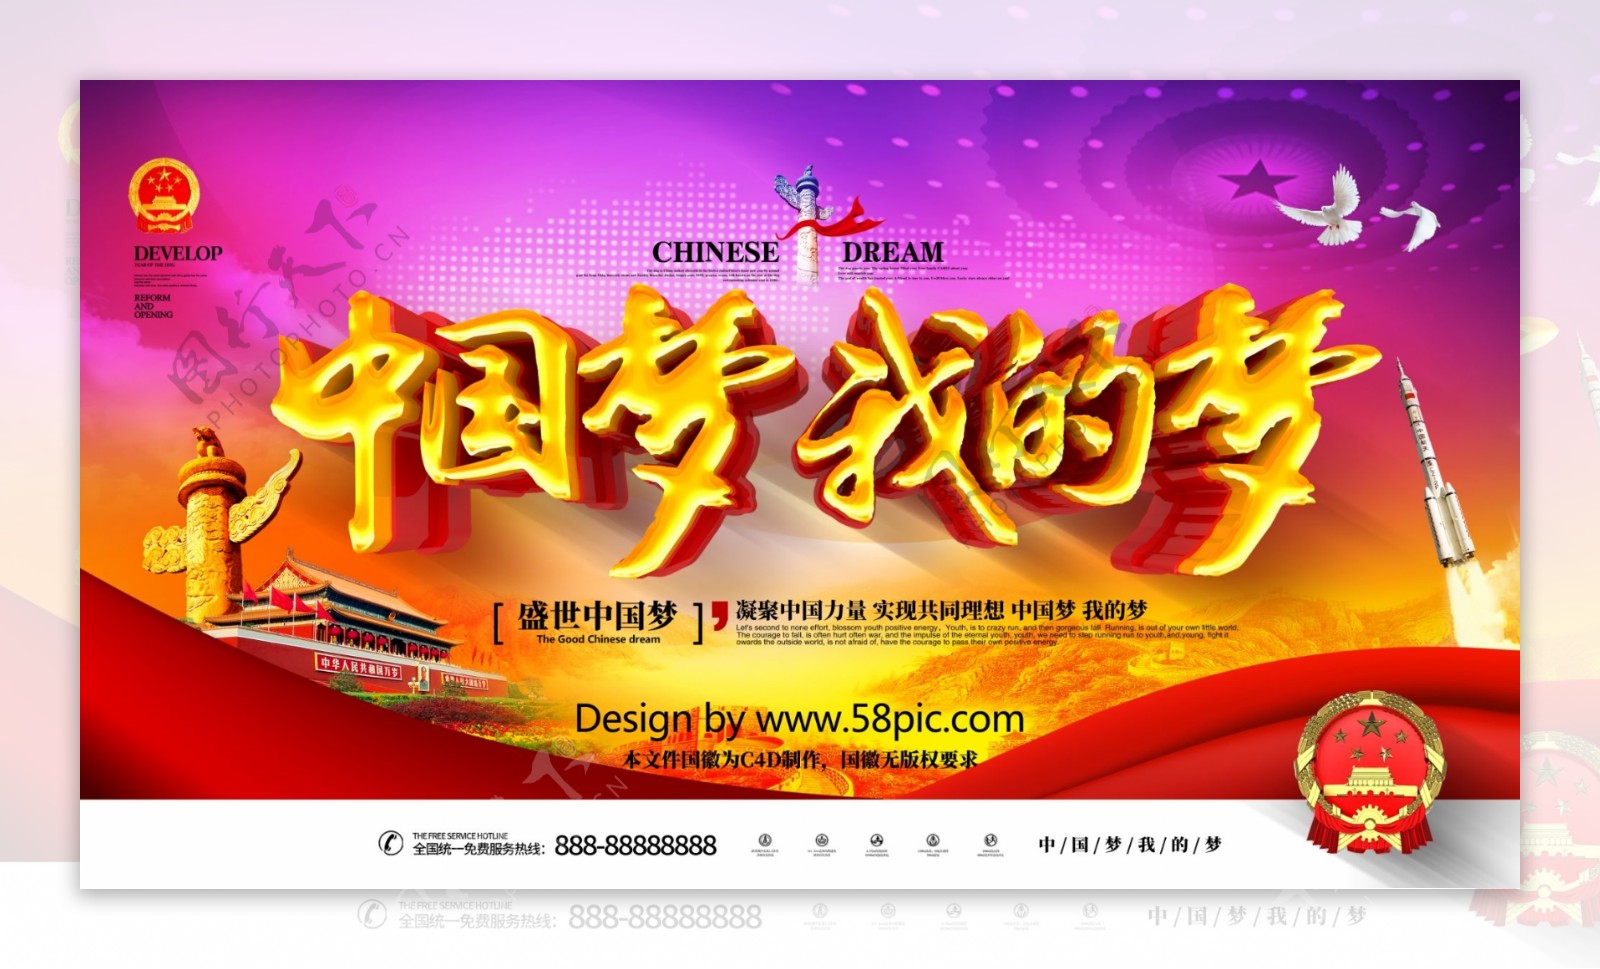 C4D红色大气党建中国梦我的梦中国梦展板